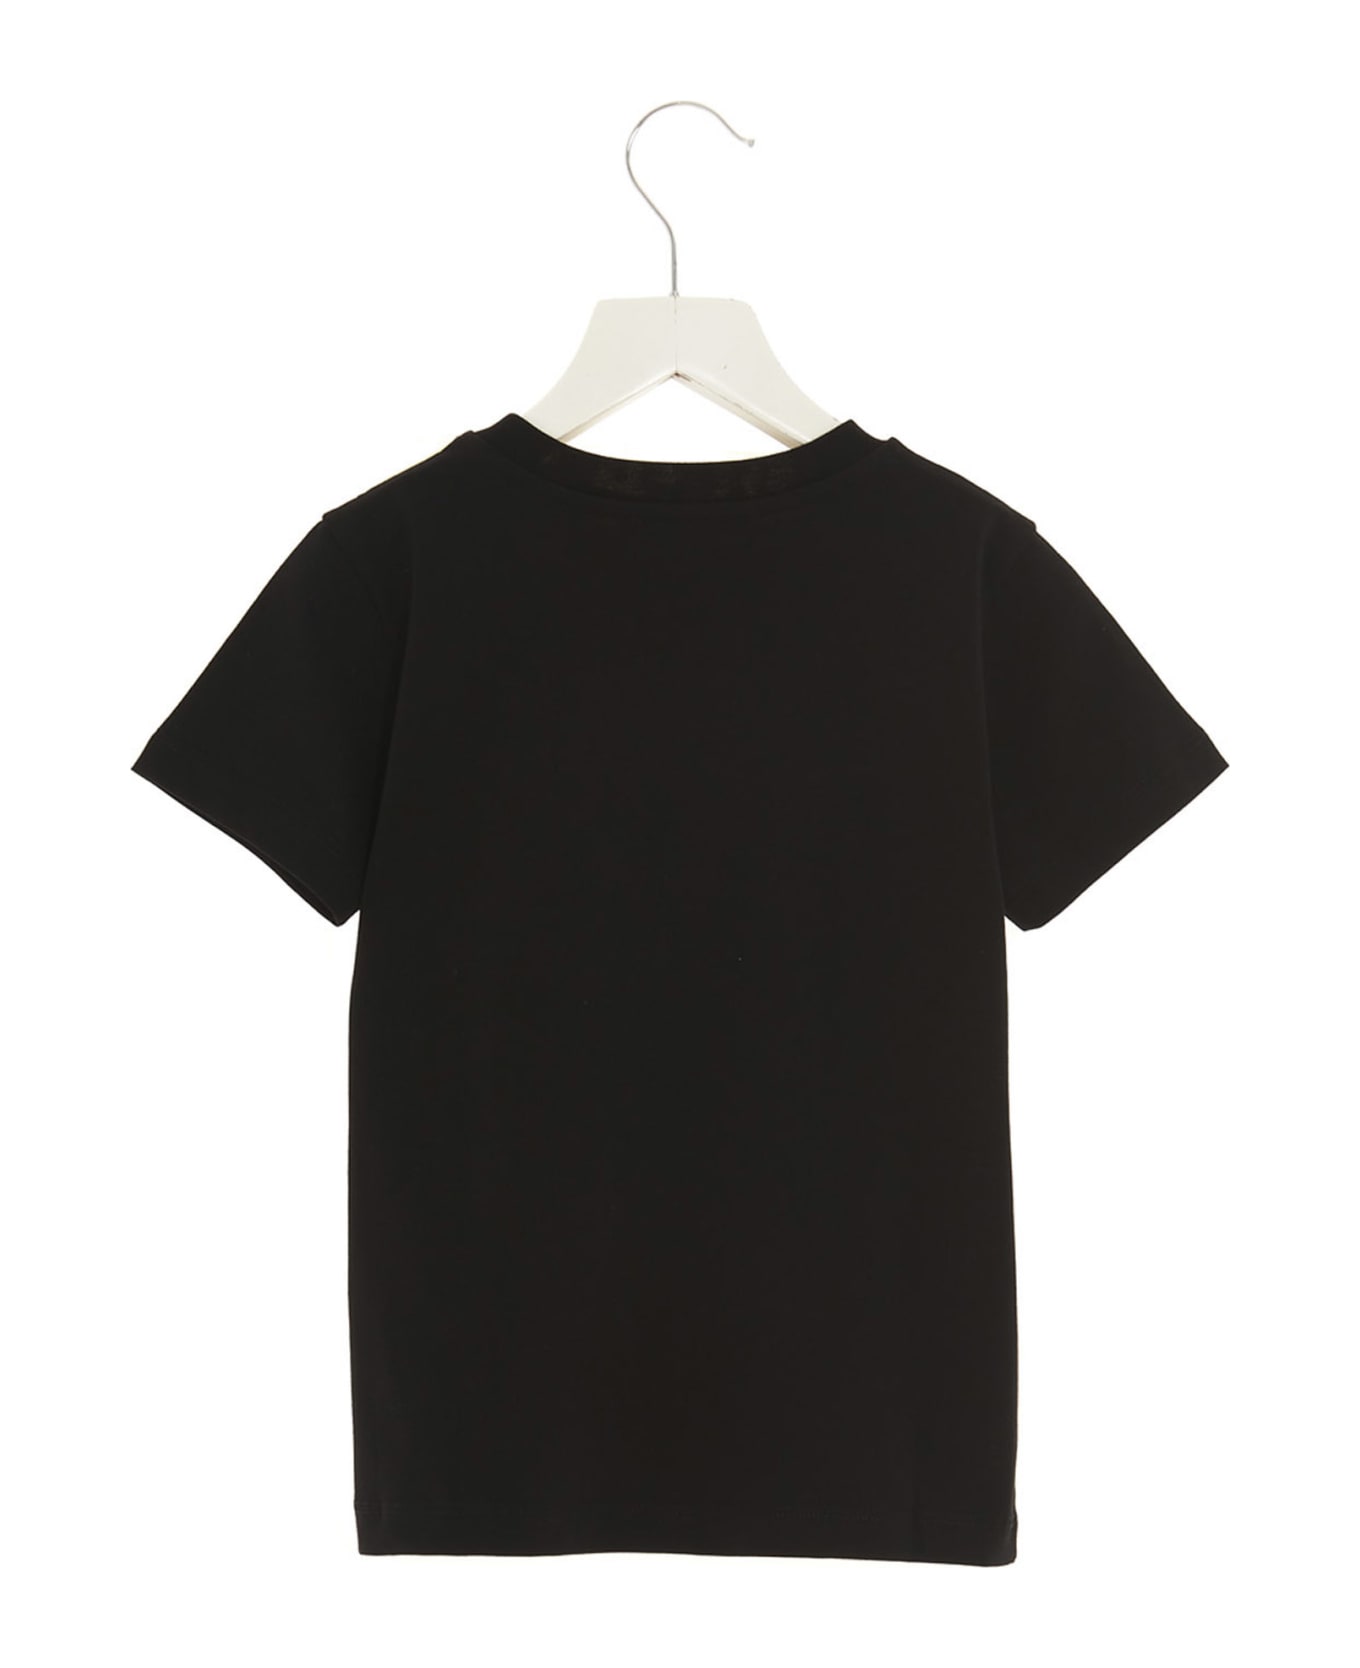 Balmain Logo T-shirt - White/Black Tシャツ＆ポロシャツ